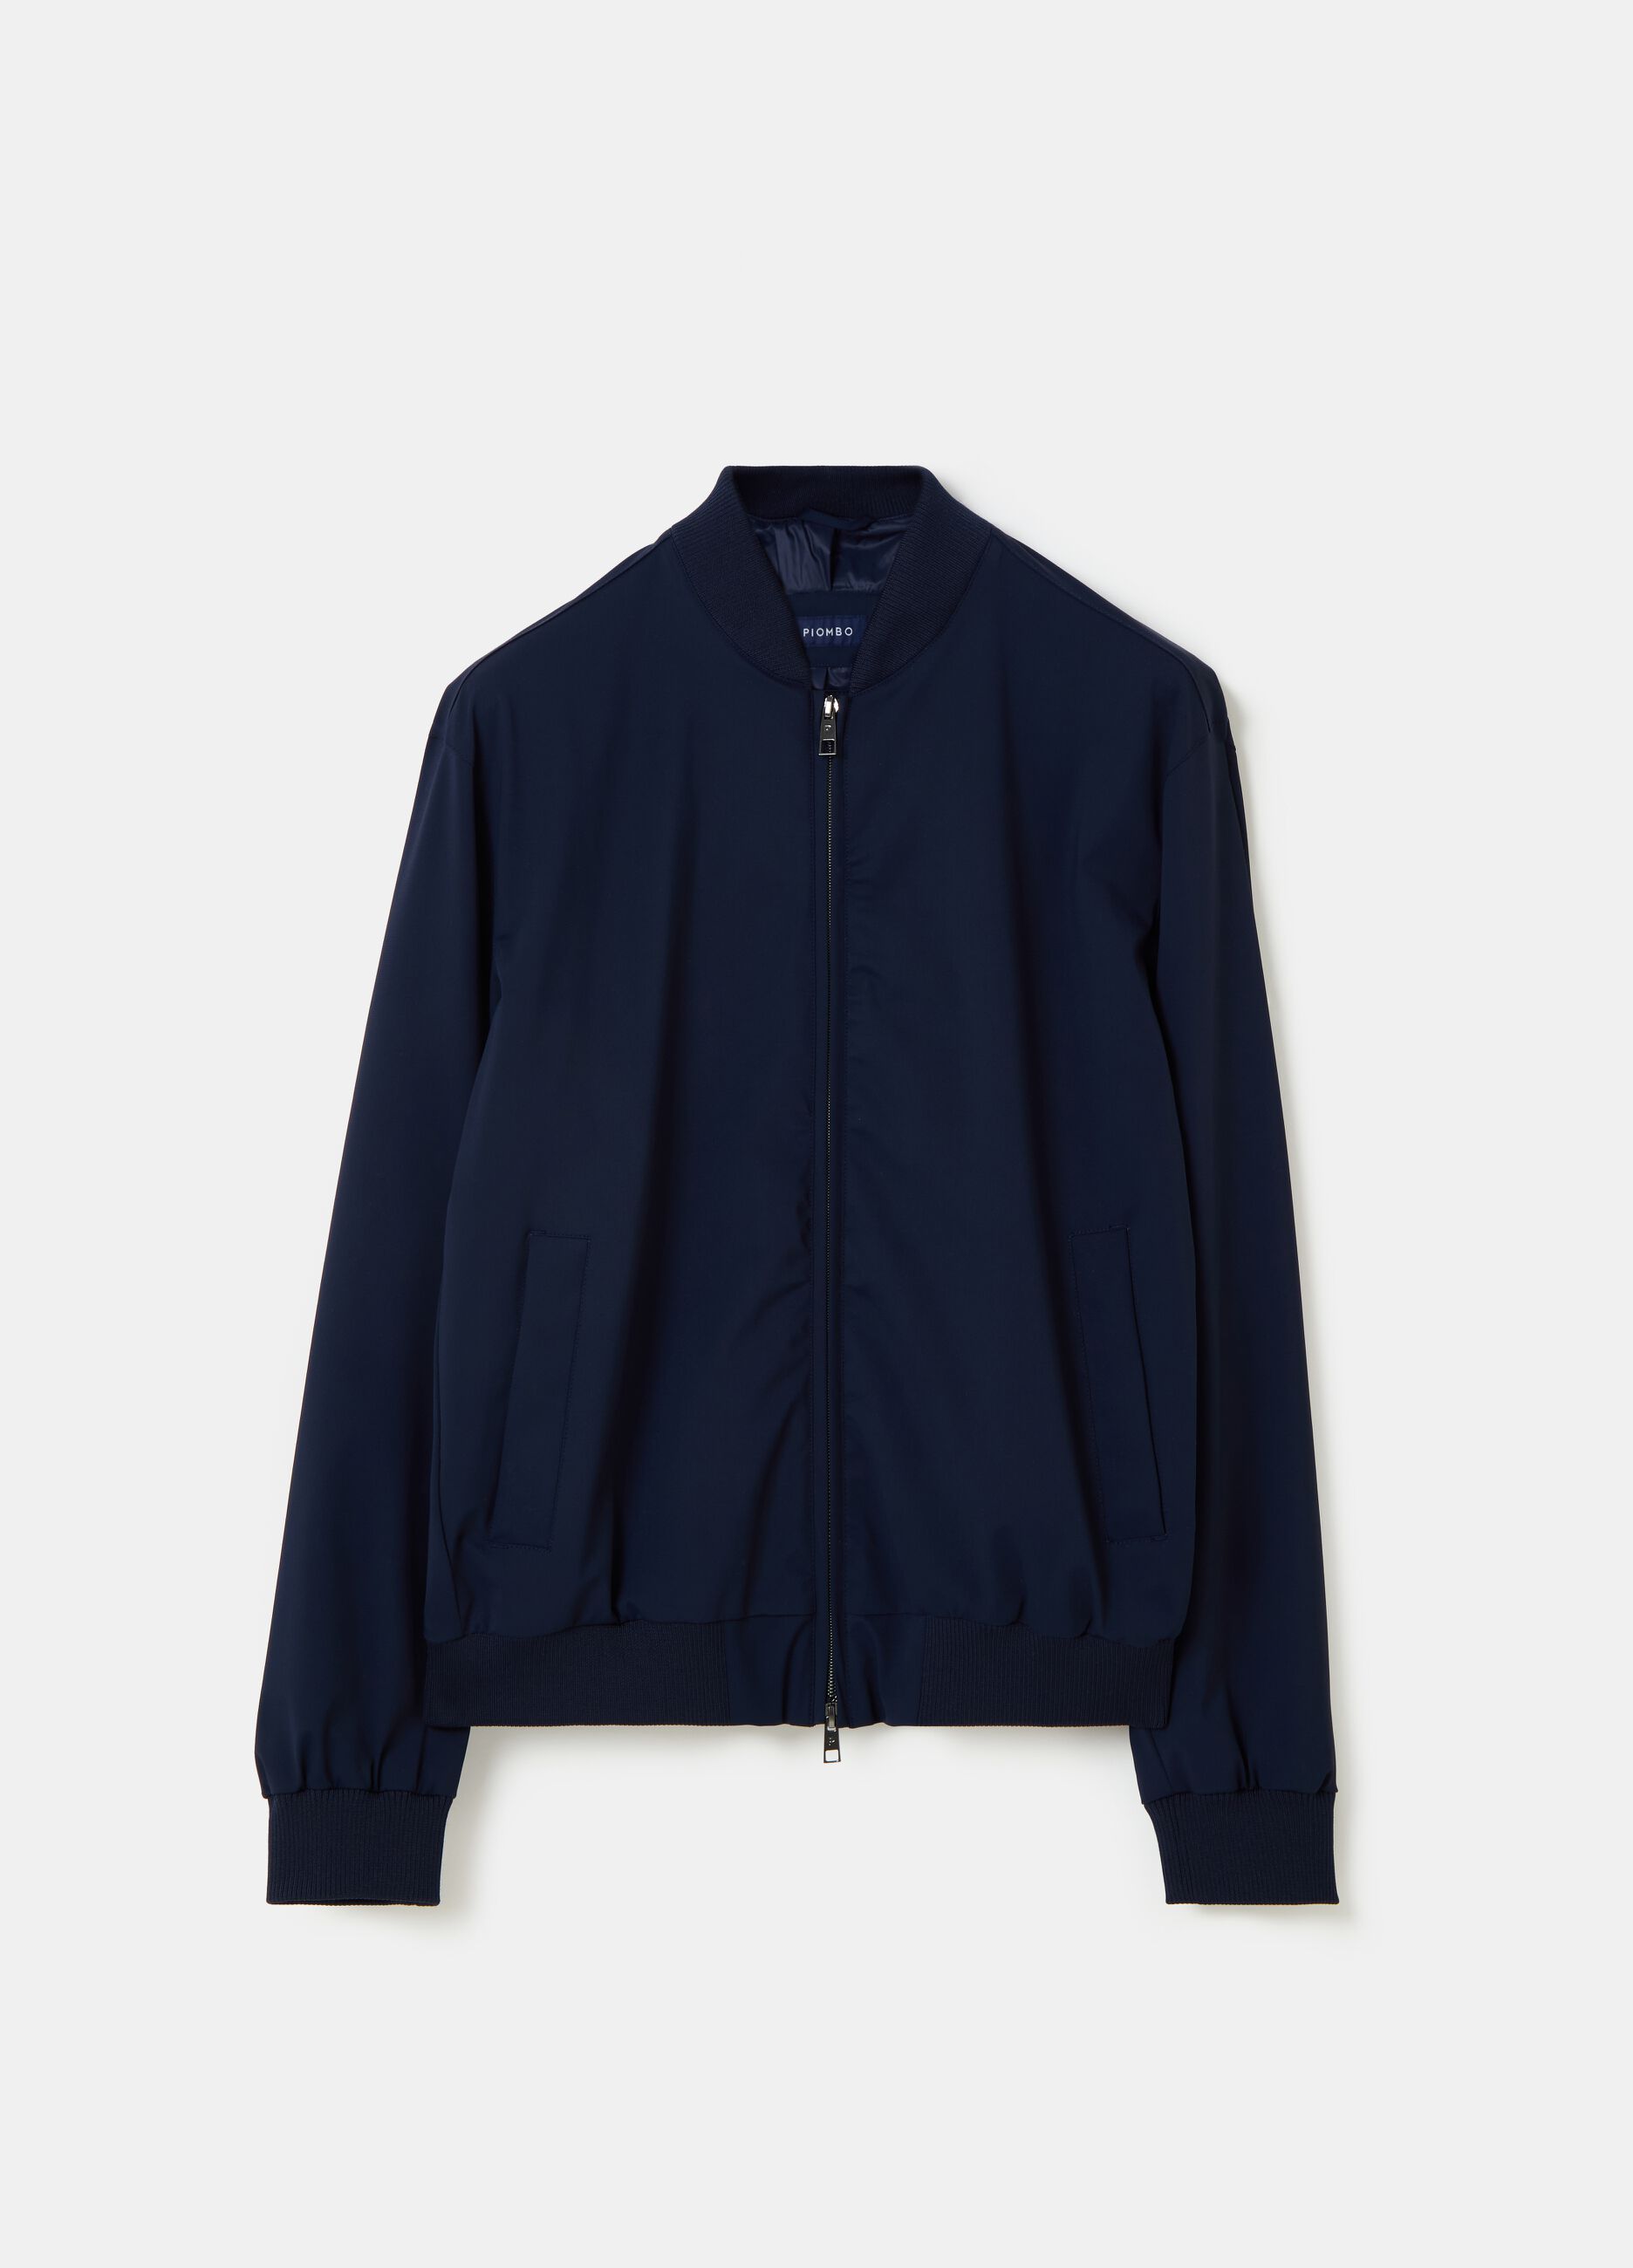 Contemporary short full-zip jacket